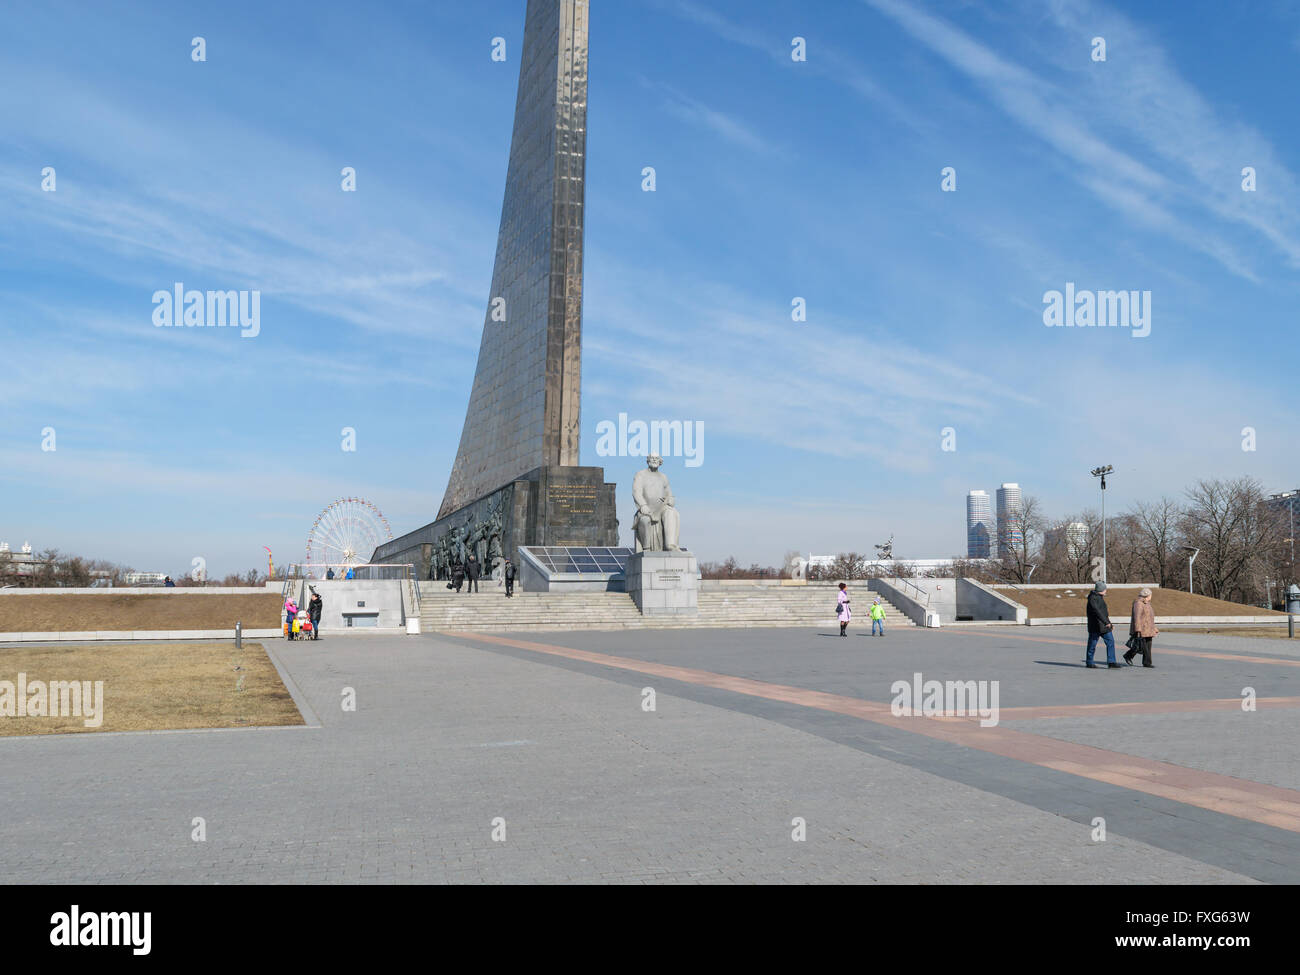 Mosca, Russia - Marzo 29, 2016: persone vicino al monumento al fondatore di astronautica Tsiolkovsky vicino all'entrata VDNH Foto Stock